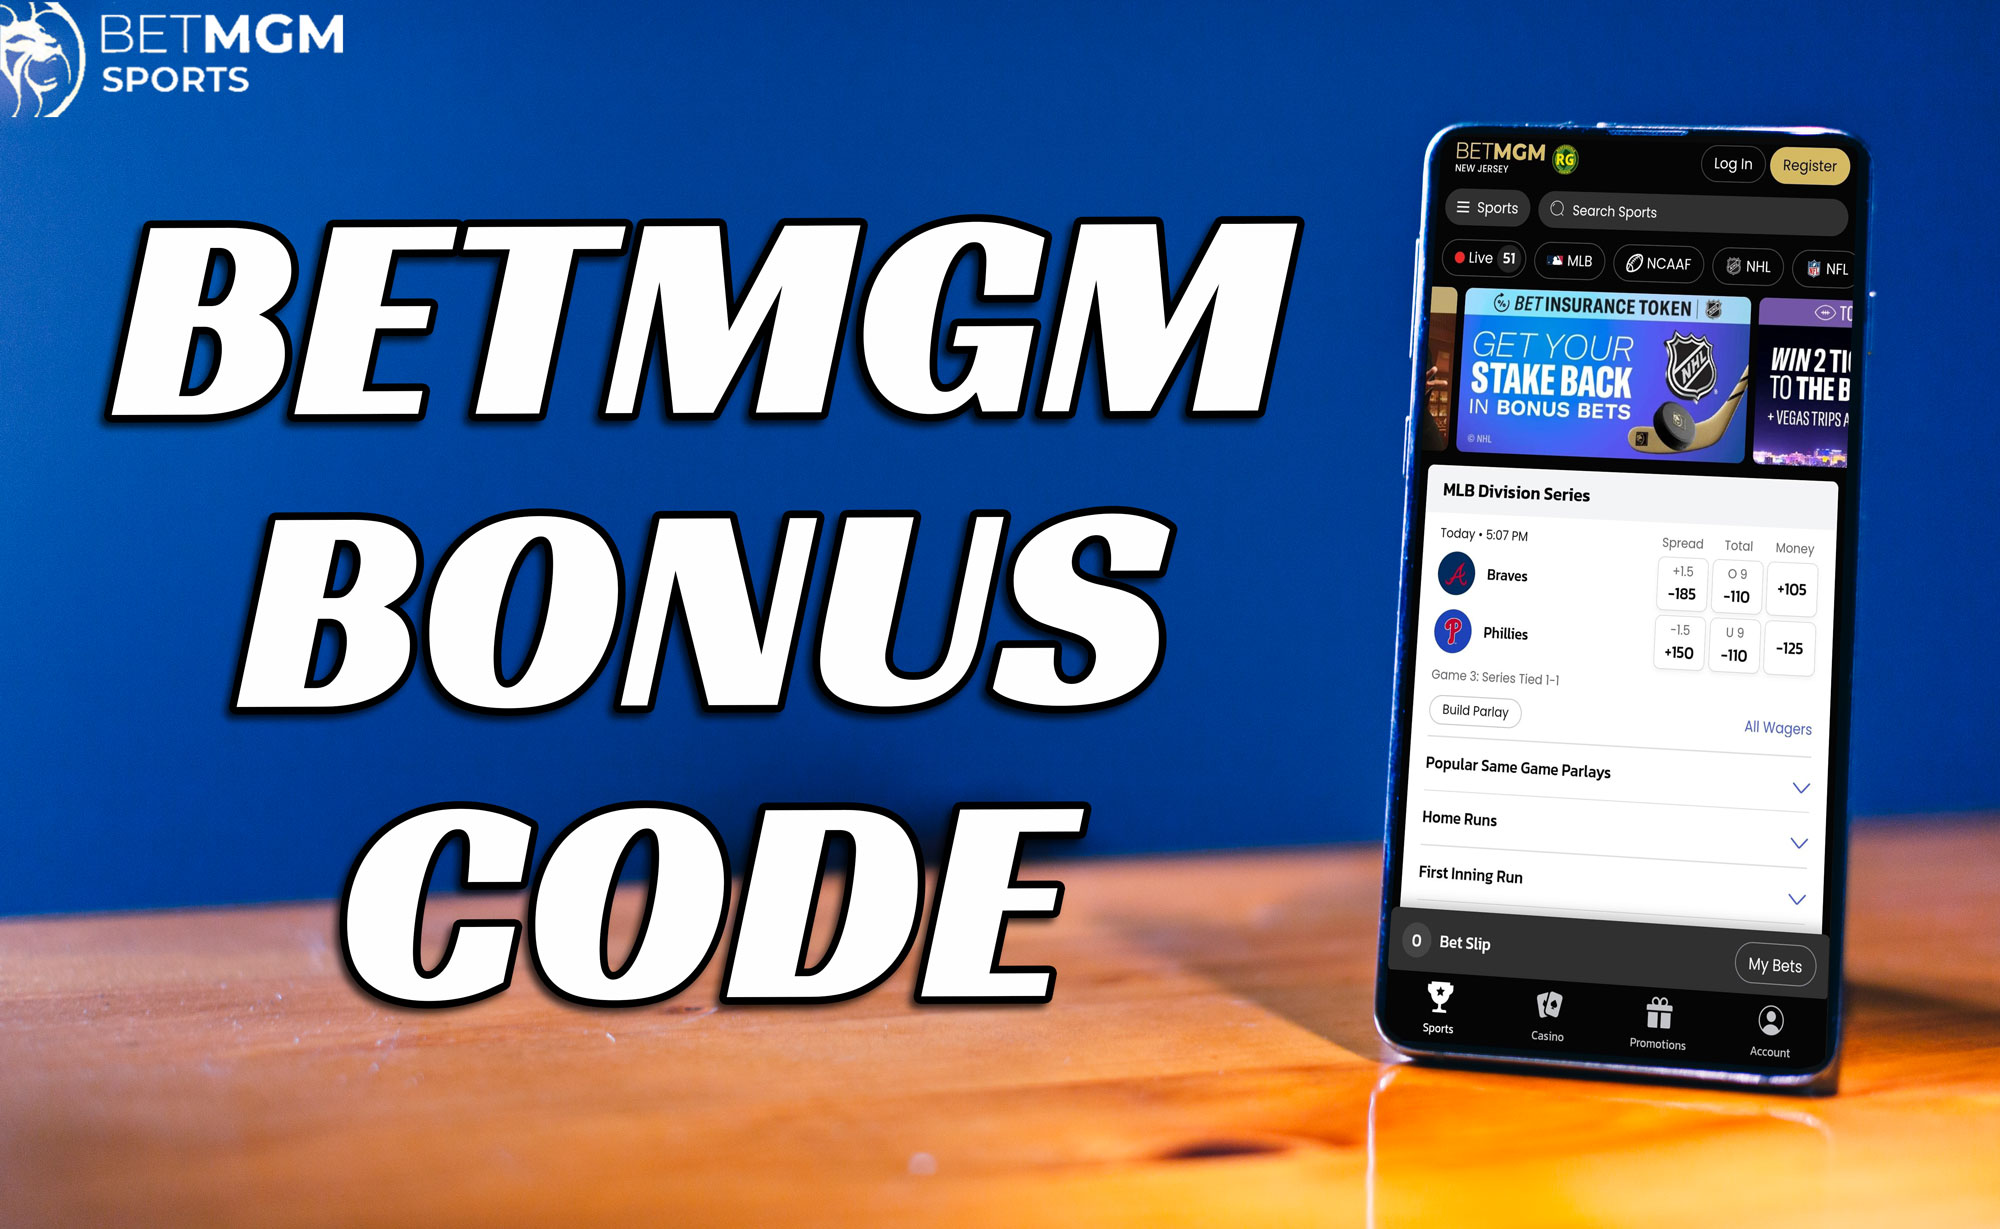 BetMGM Massachusetts Bonus Code USATODAY Glittering $1000 Offer For MLB All- Star Game